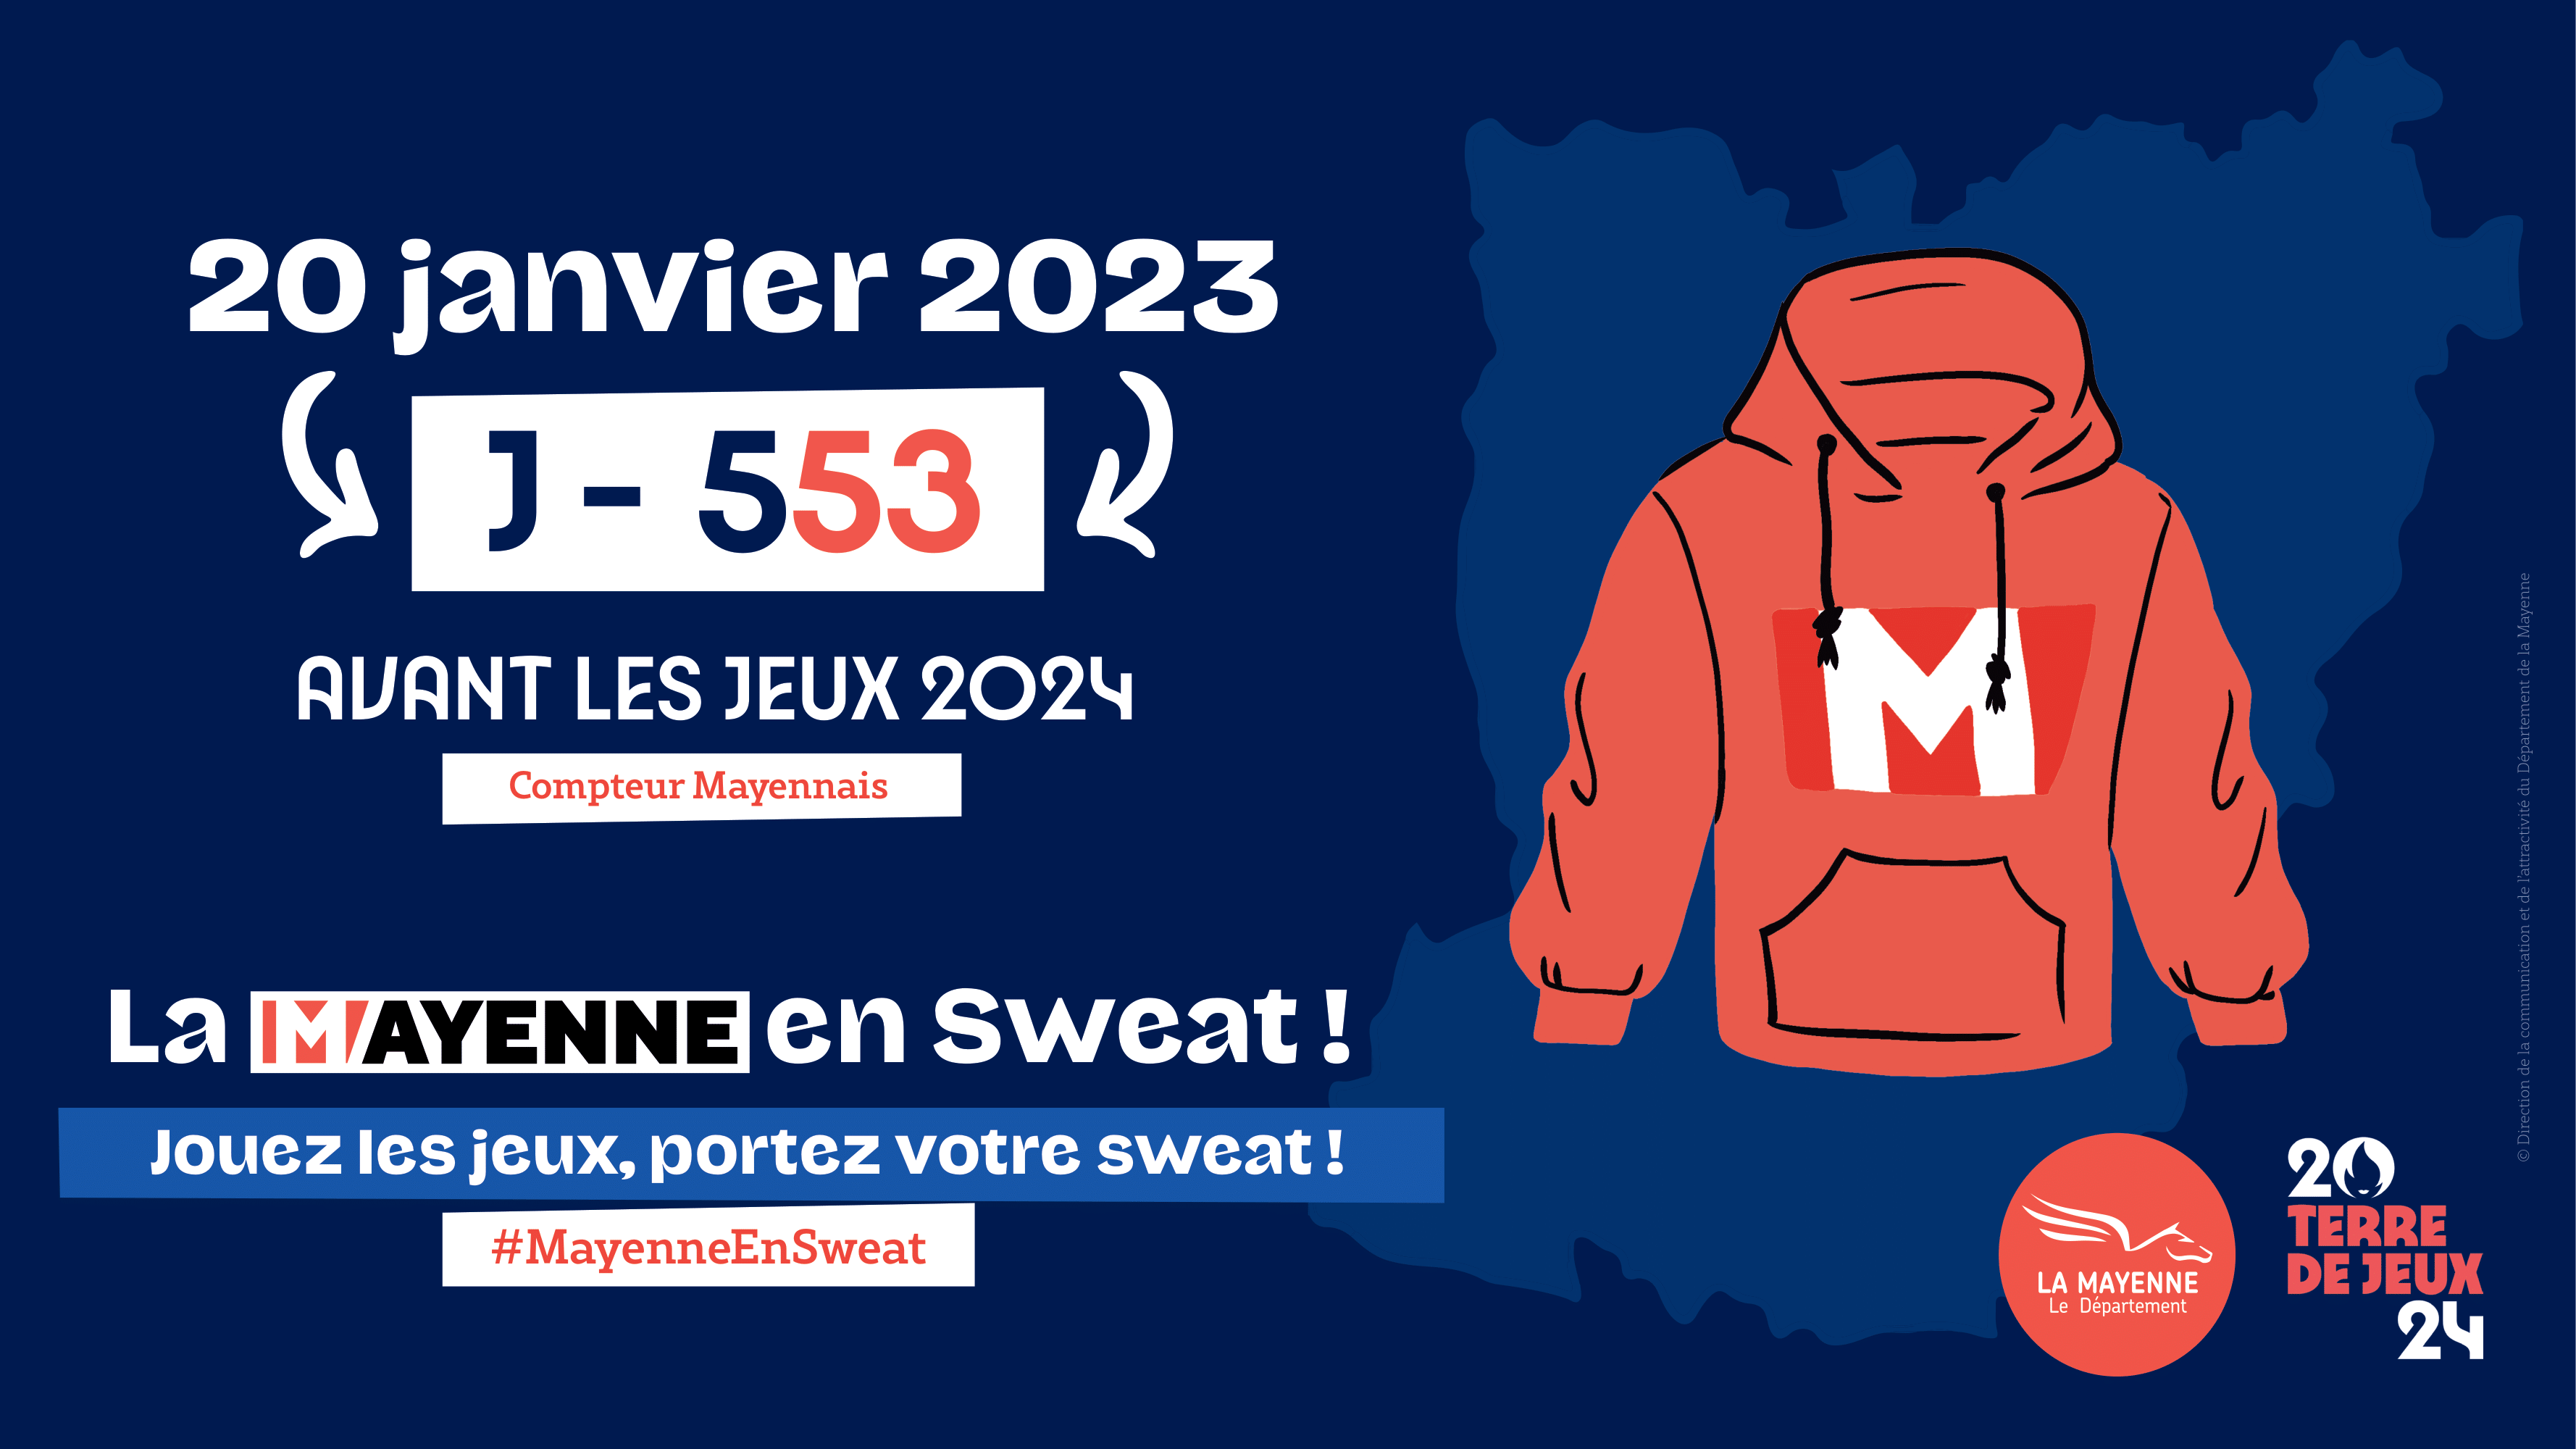 J-553 avant les JO 2024, « La Mayenne en sweat», le 20 janvier !